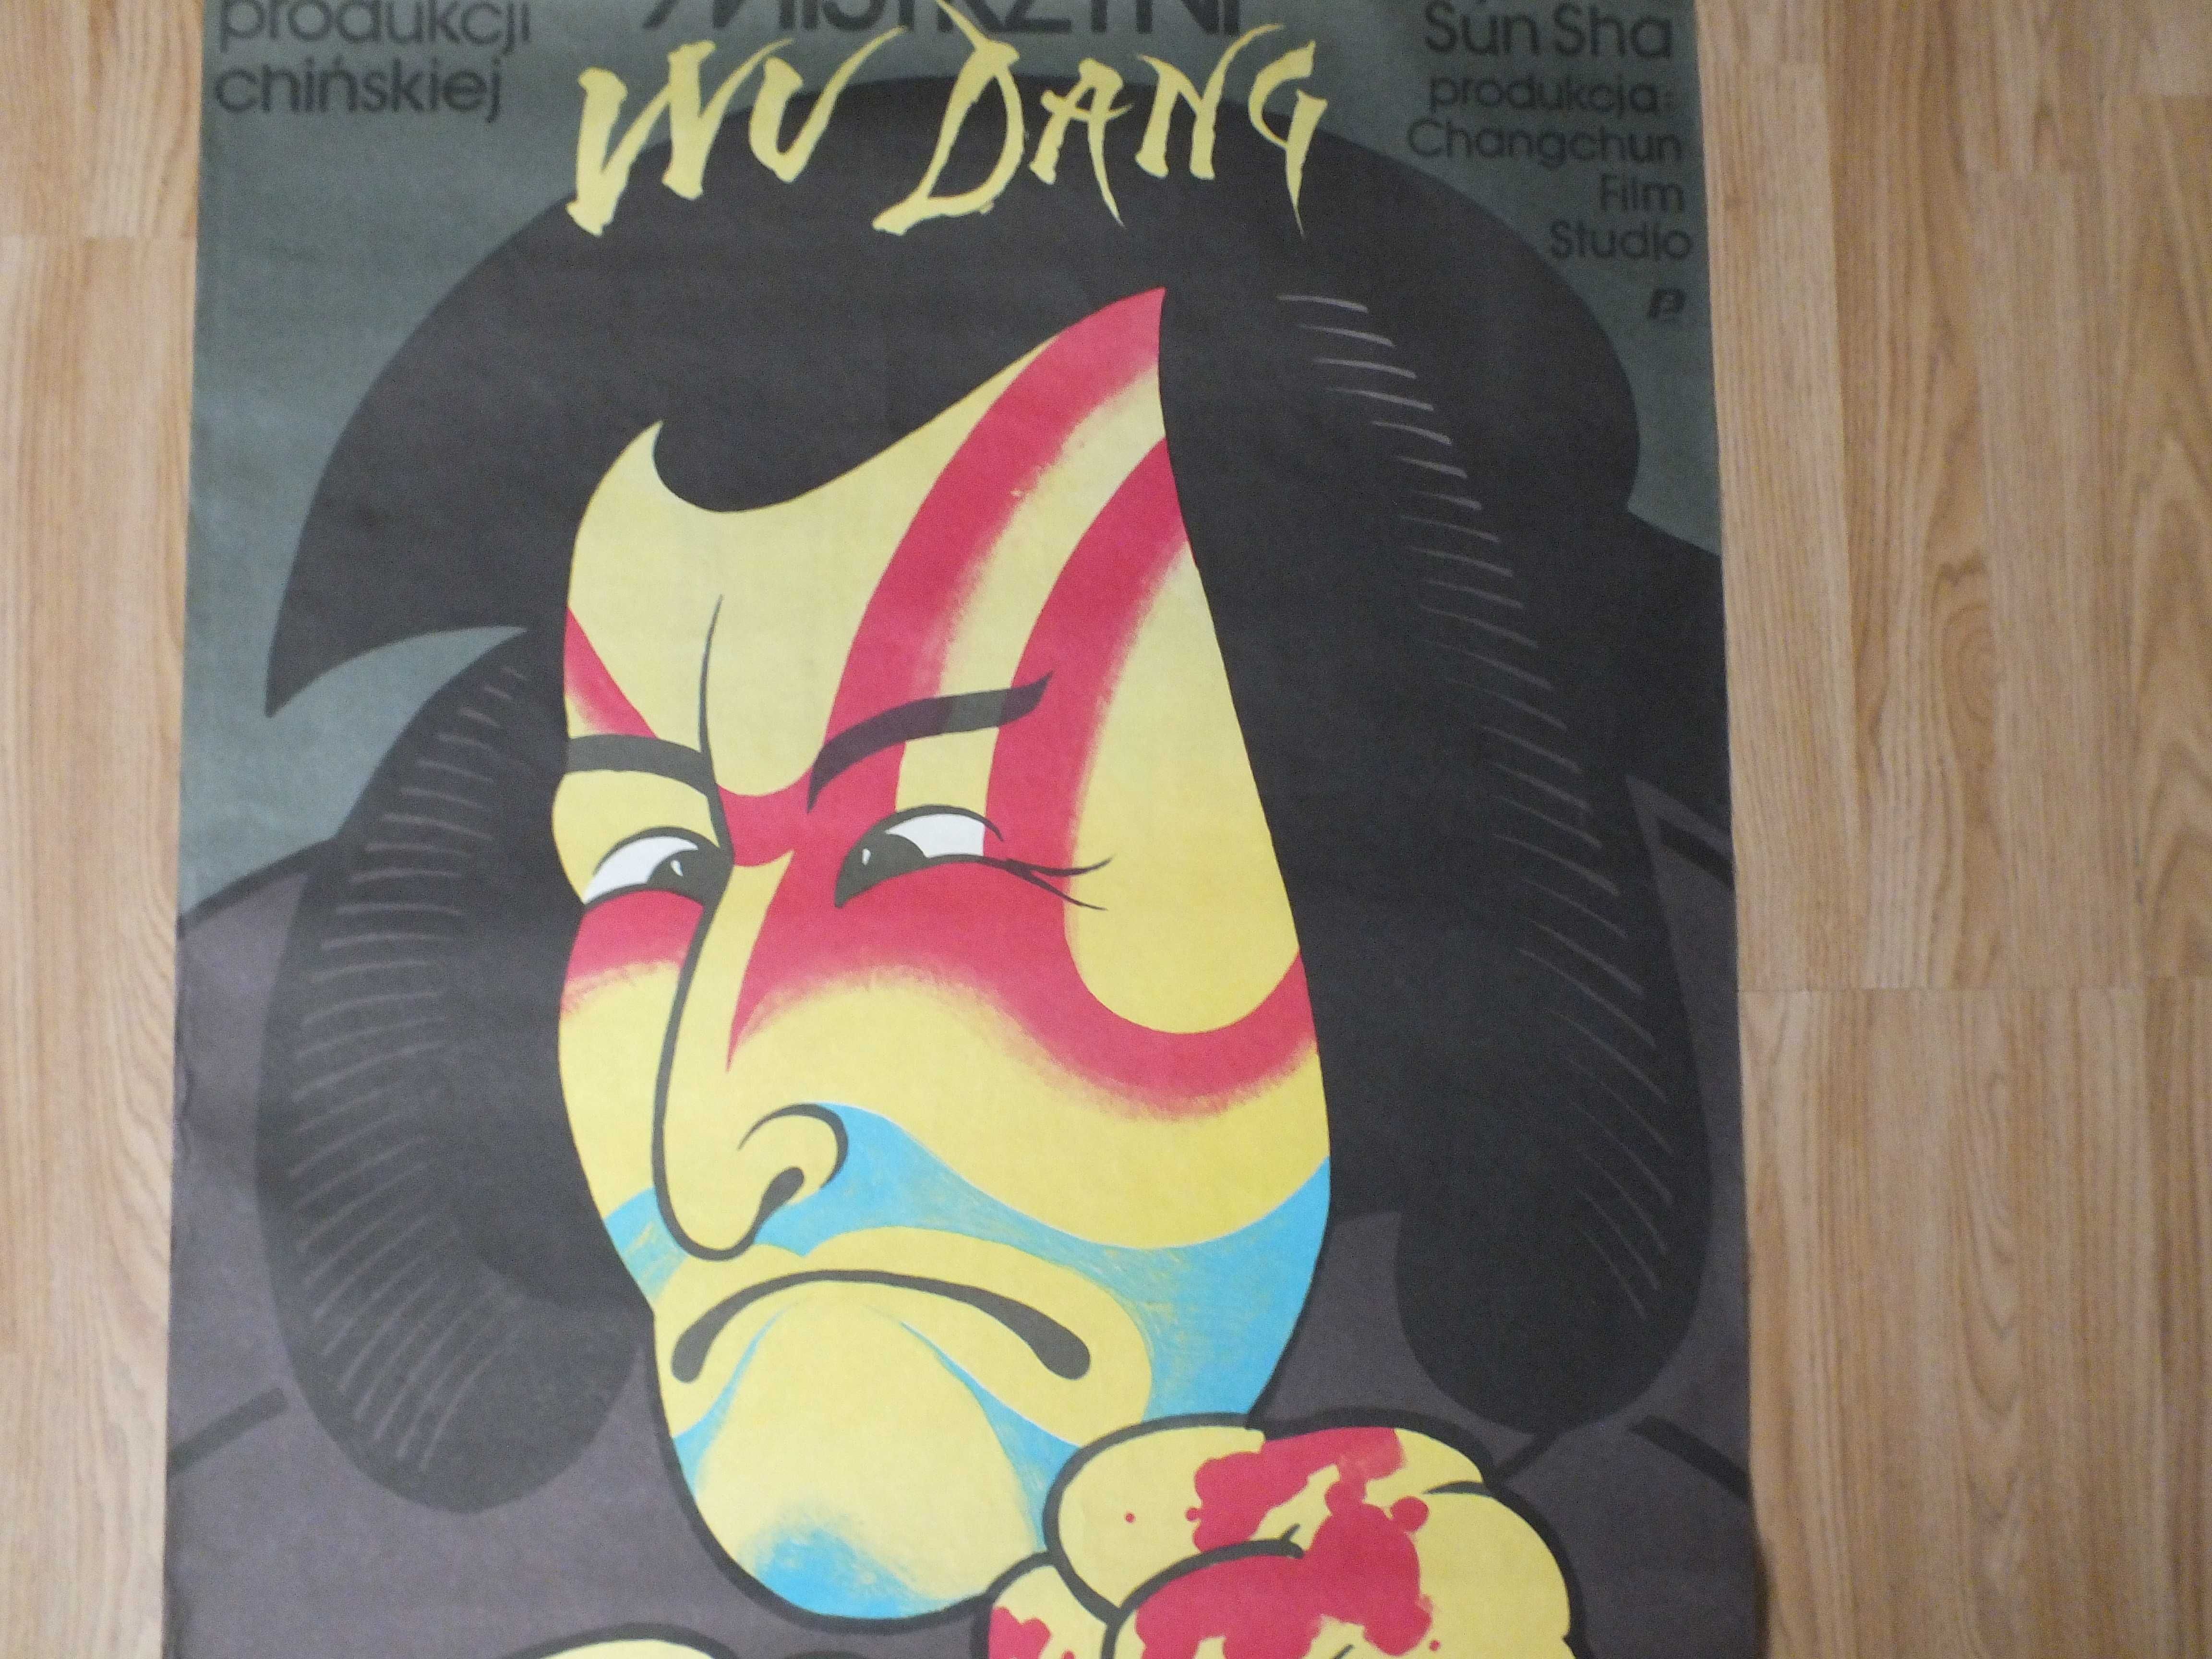 Oryginalny plakat --Mistrzyni Wu Dang-  Pierwodruk. 1983  W.Wałkuski